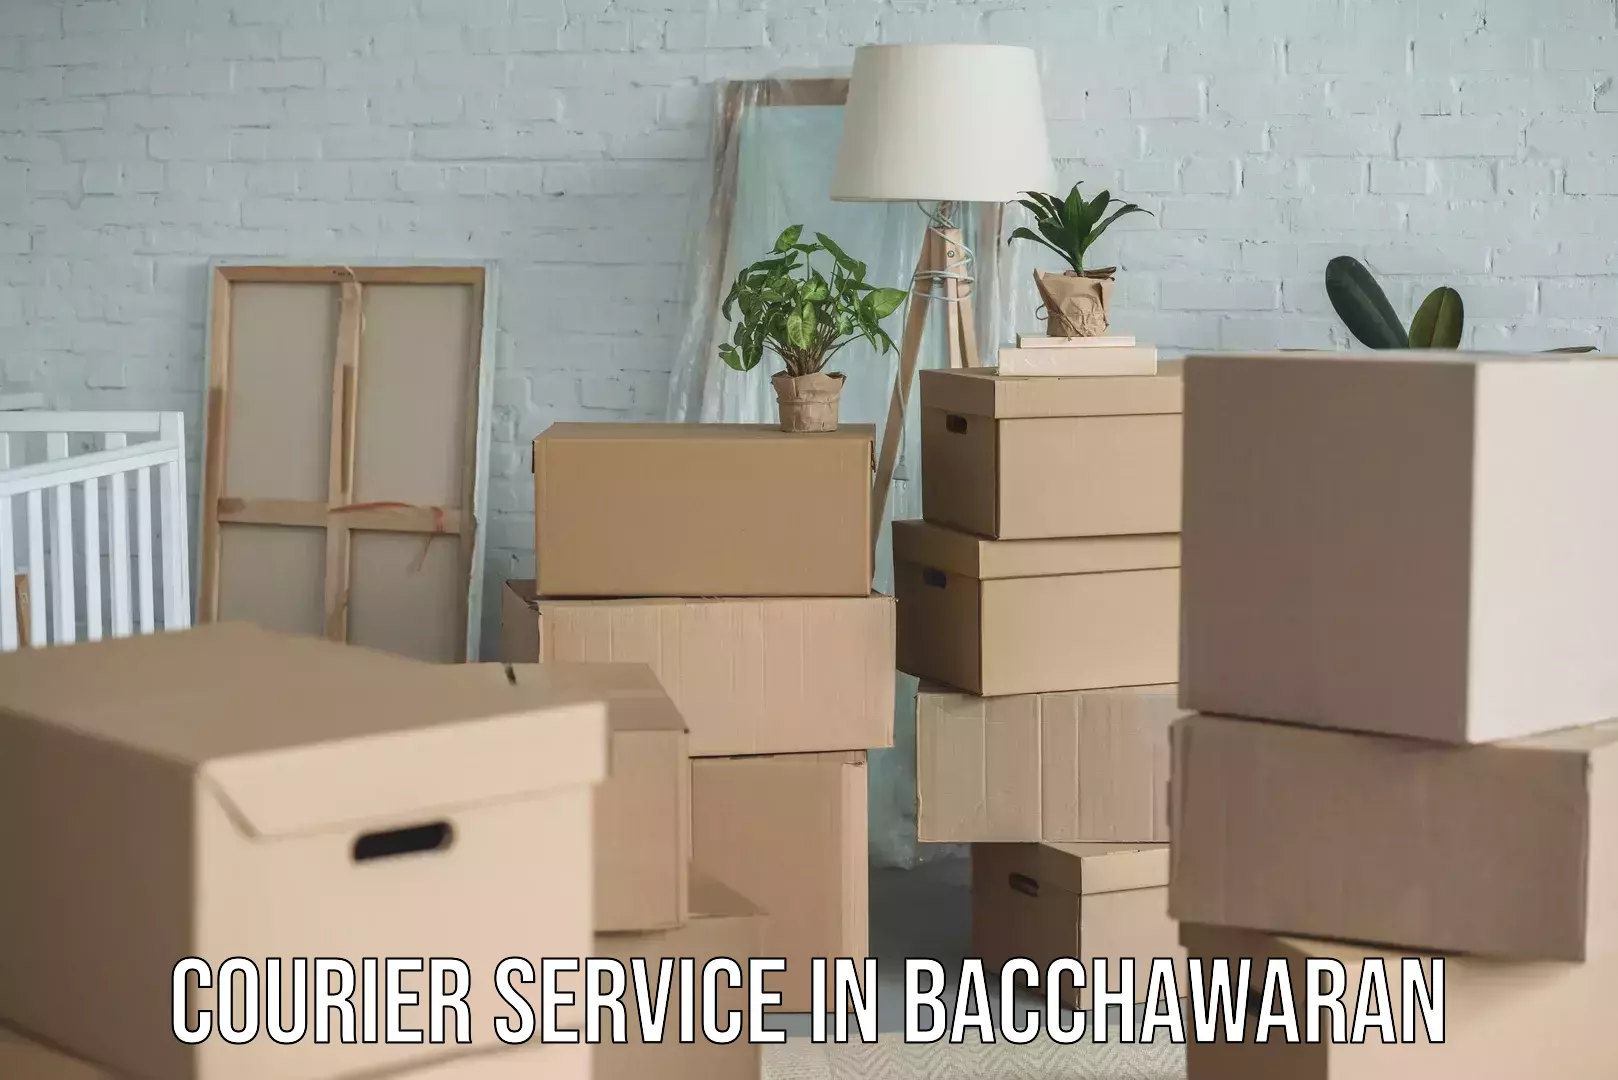 Customer-centric shipping in Bacchawaran